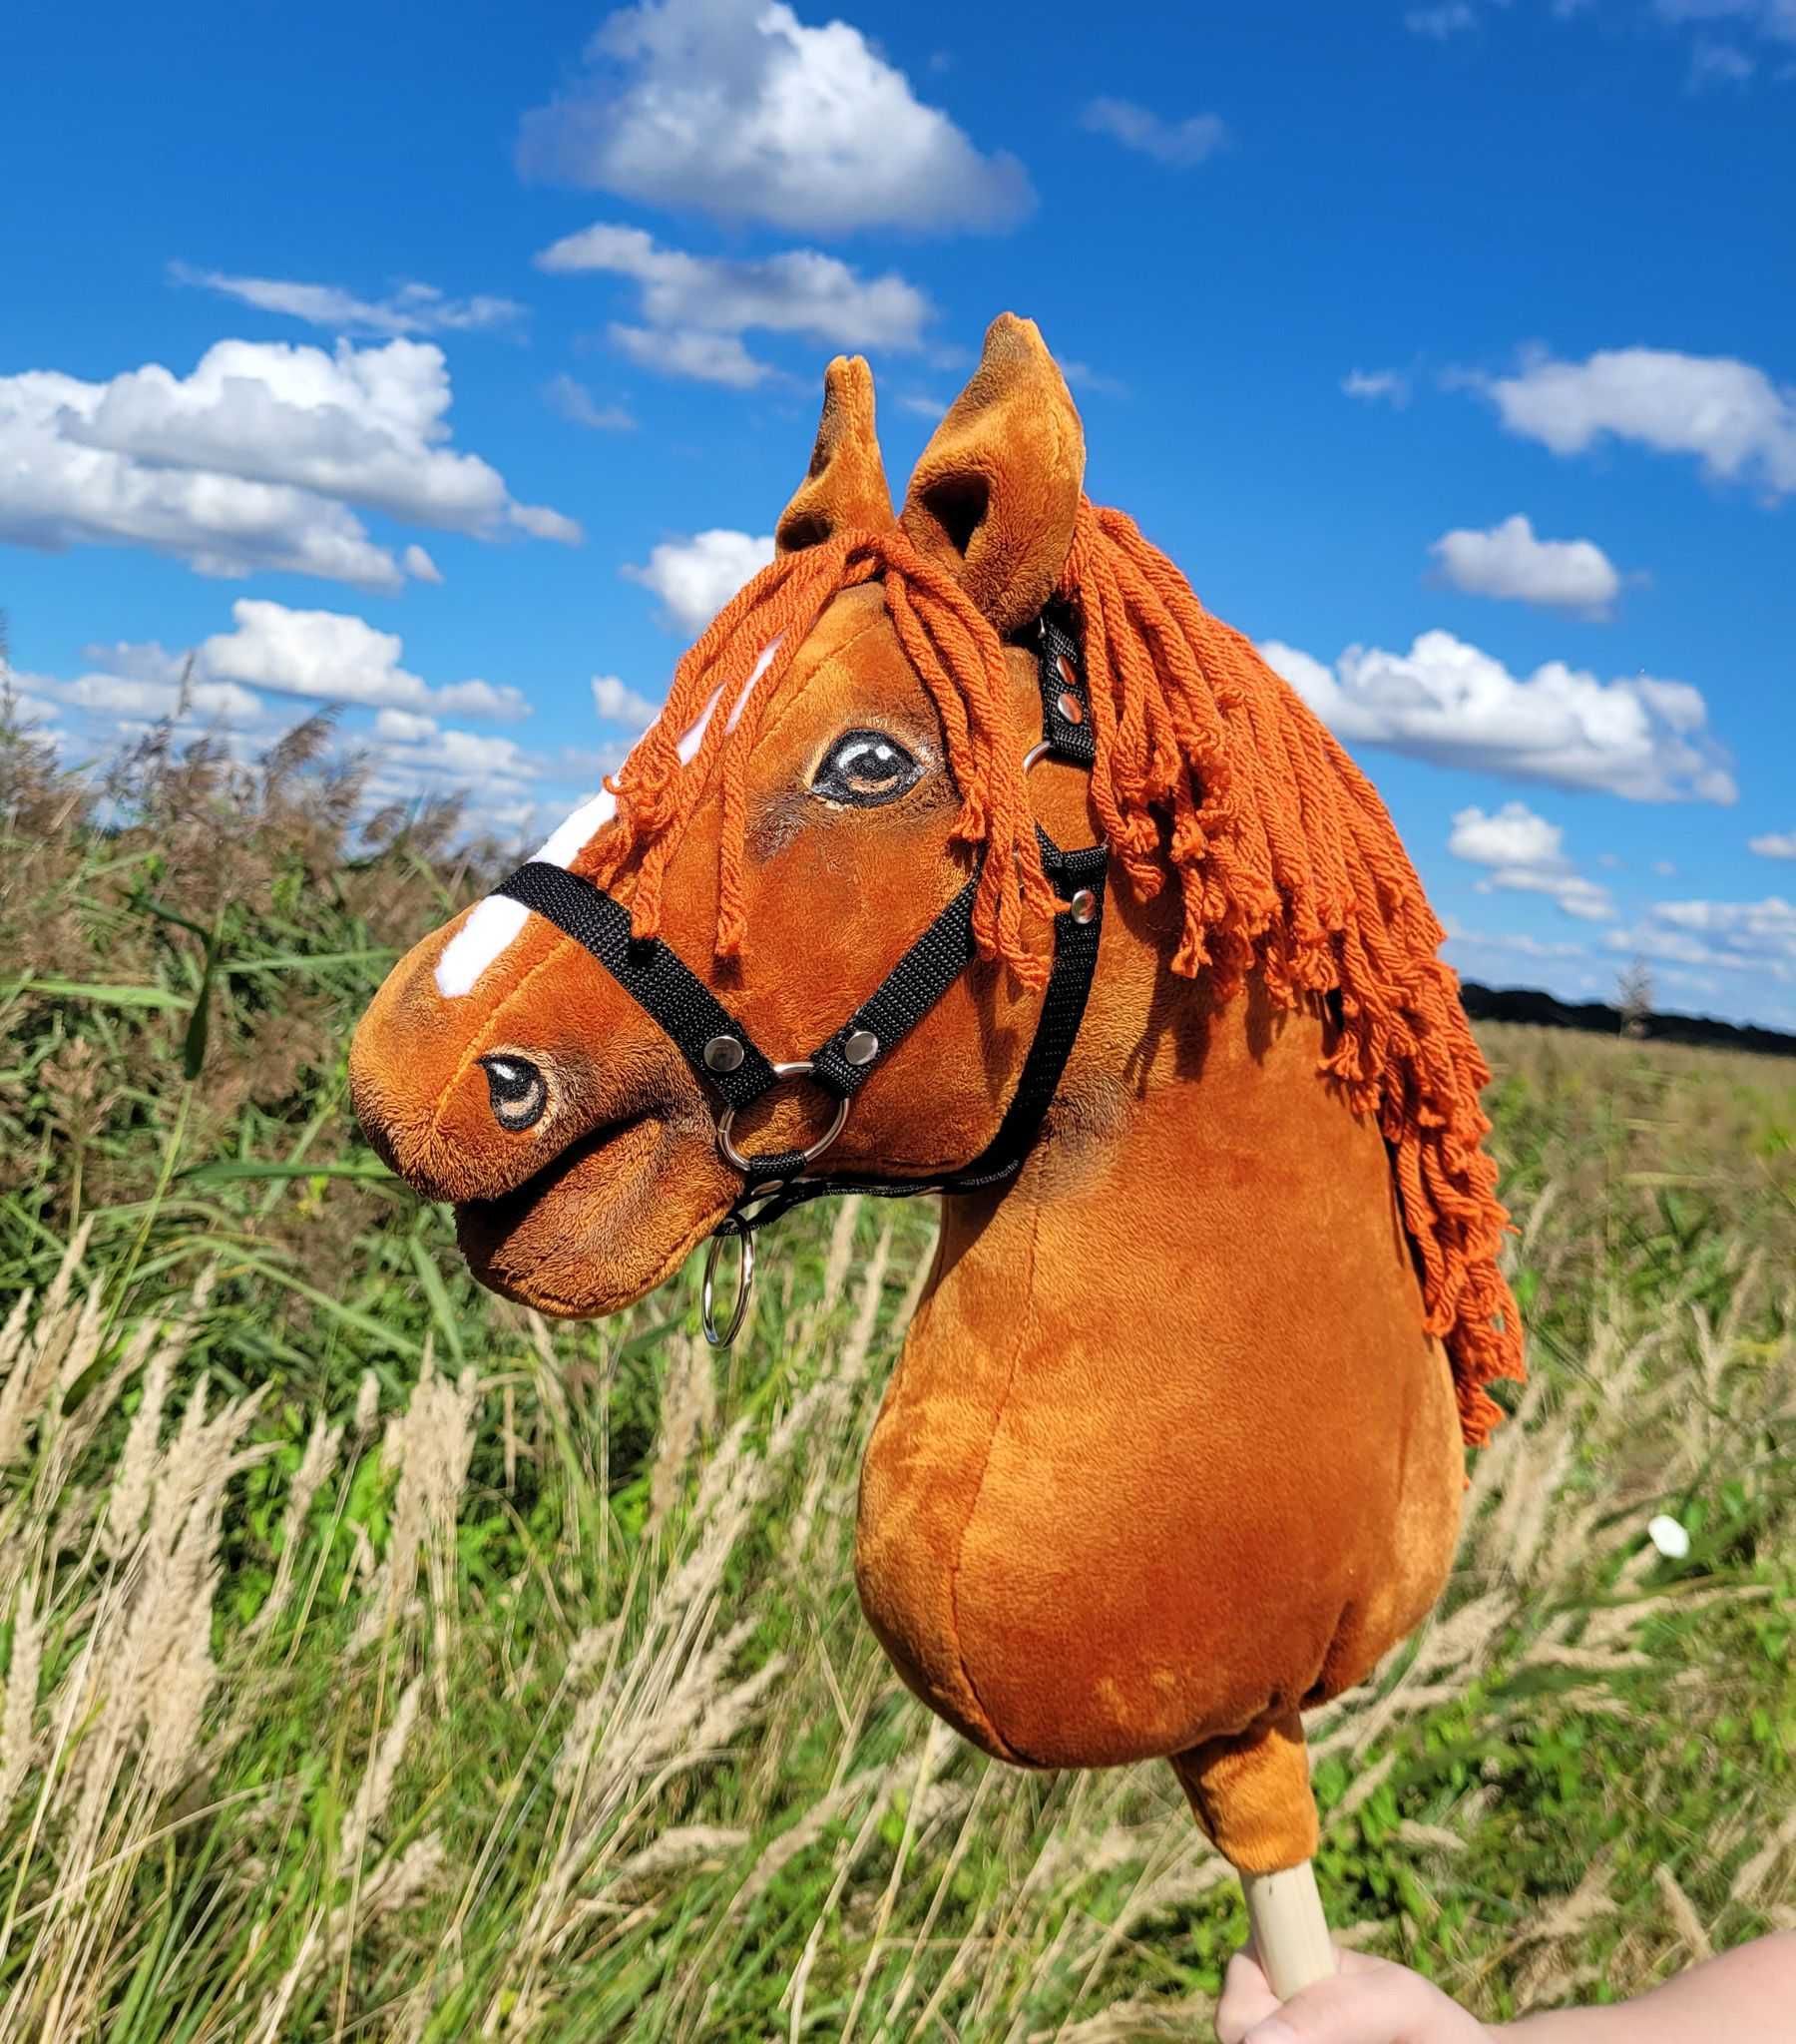 Hobby Horse Duży koń na kiju Premium - kasztan A3!